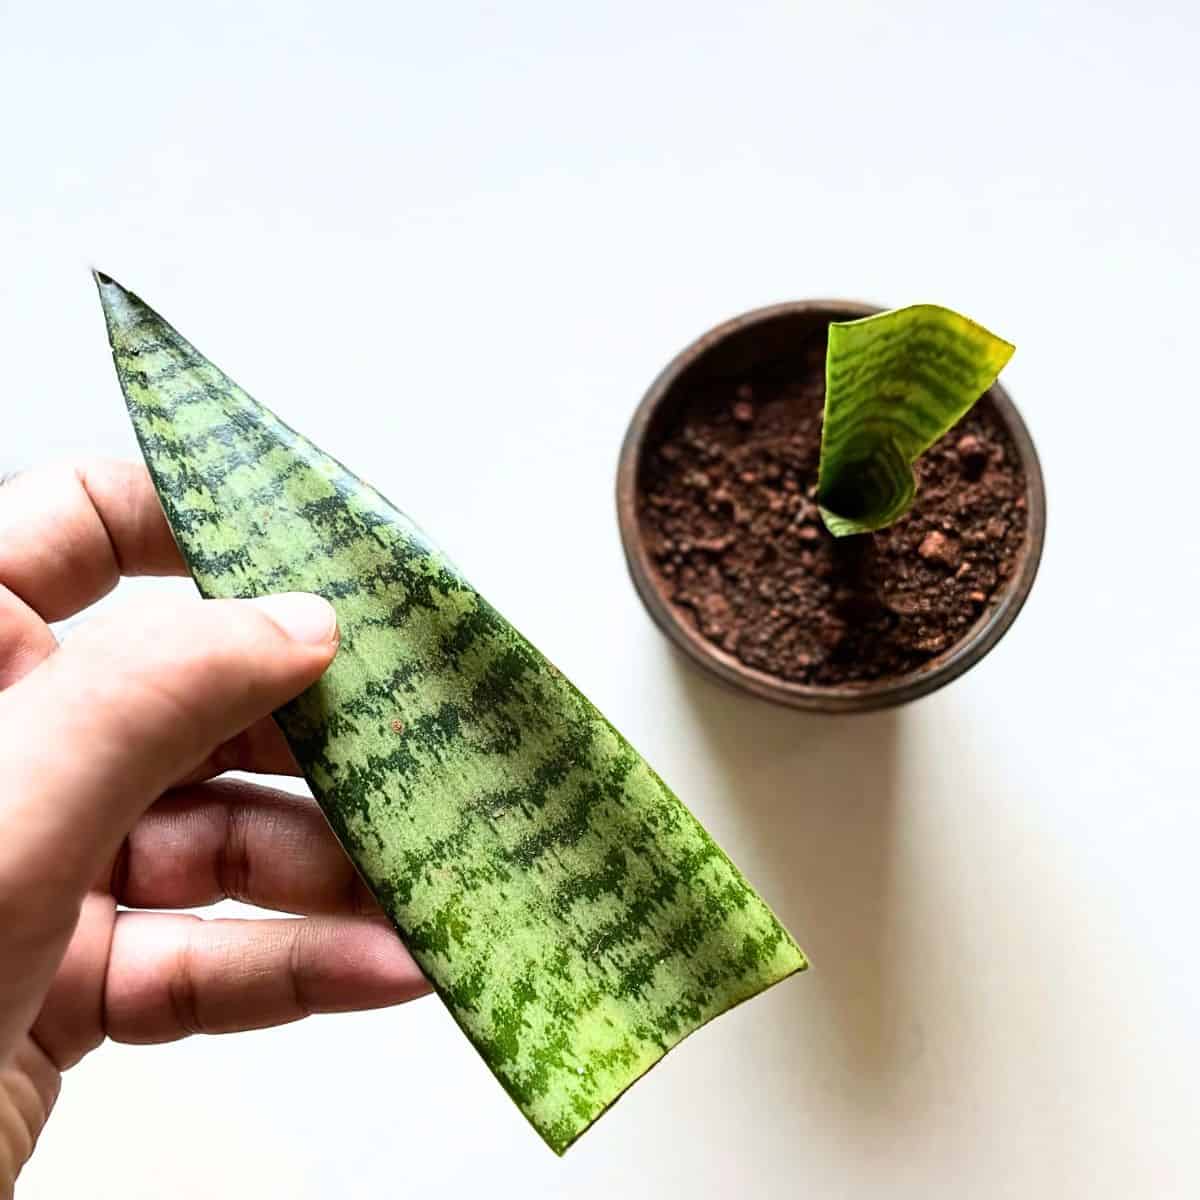 trimmed snake plant leaf